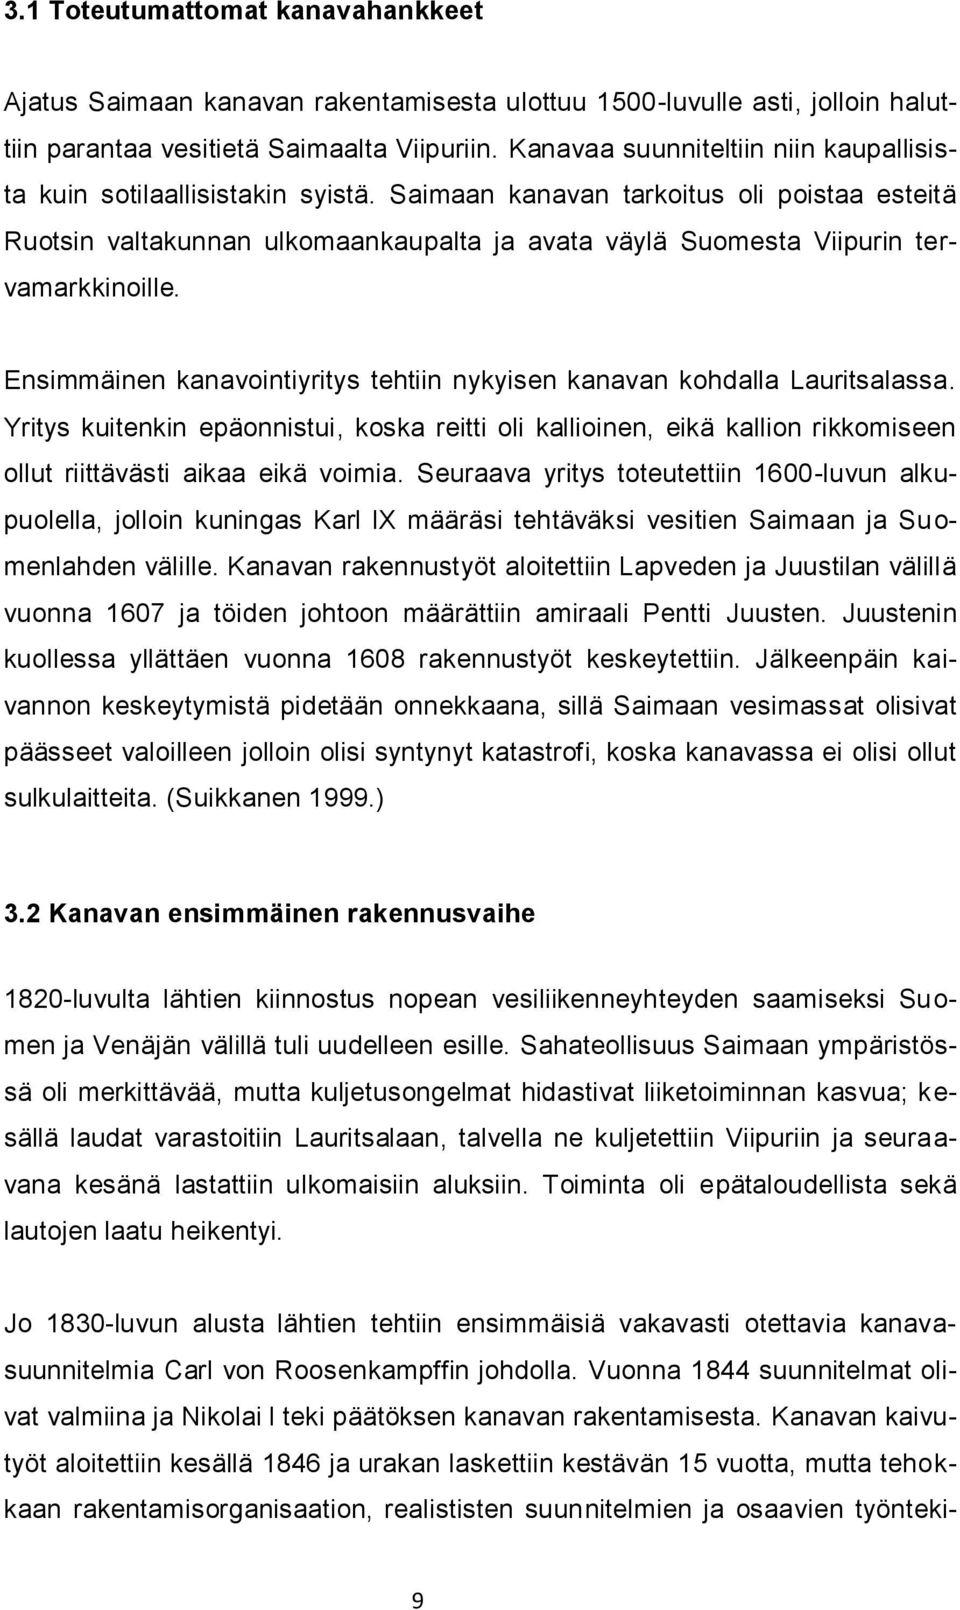 Saimaan kanavan tarkoitus oli poistaa esteitä Ruotsin valtakunnan ulkomaankaupalta ja avata väylä Suomesta Viipurin tervamarkkinoille.